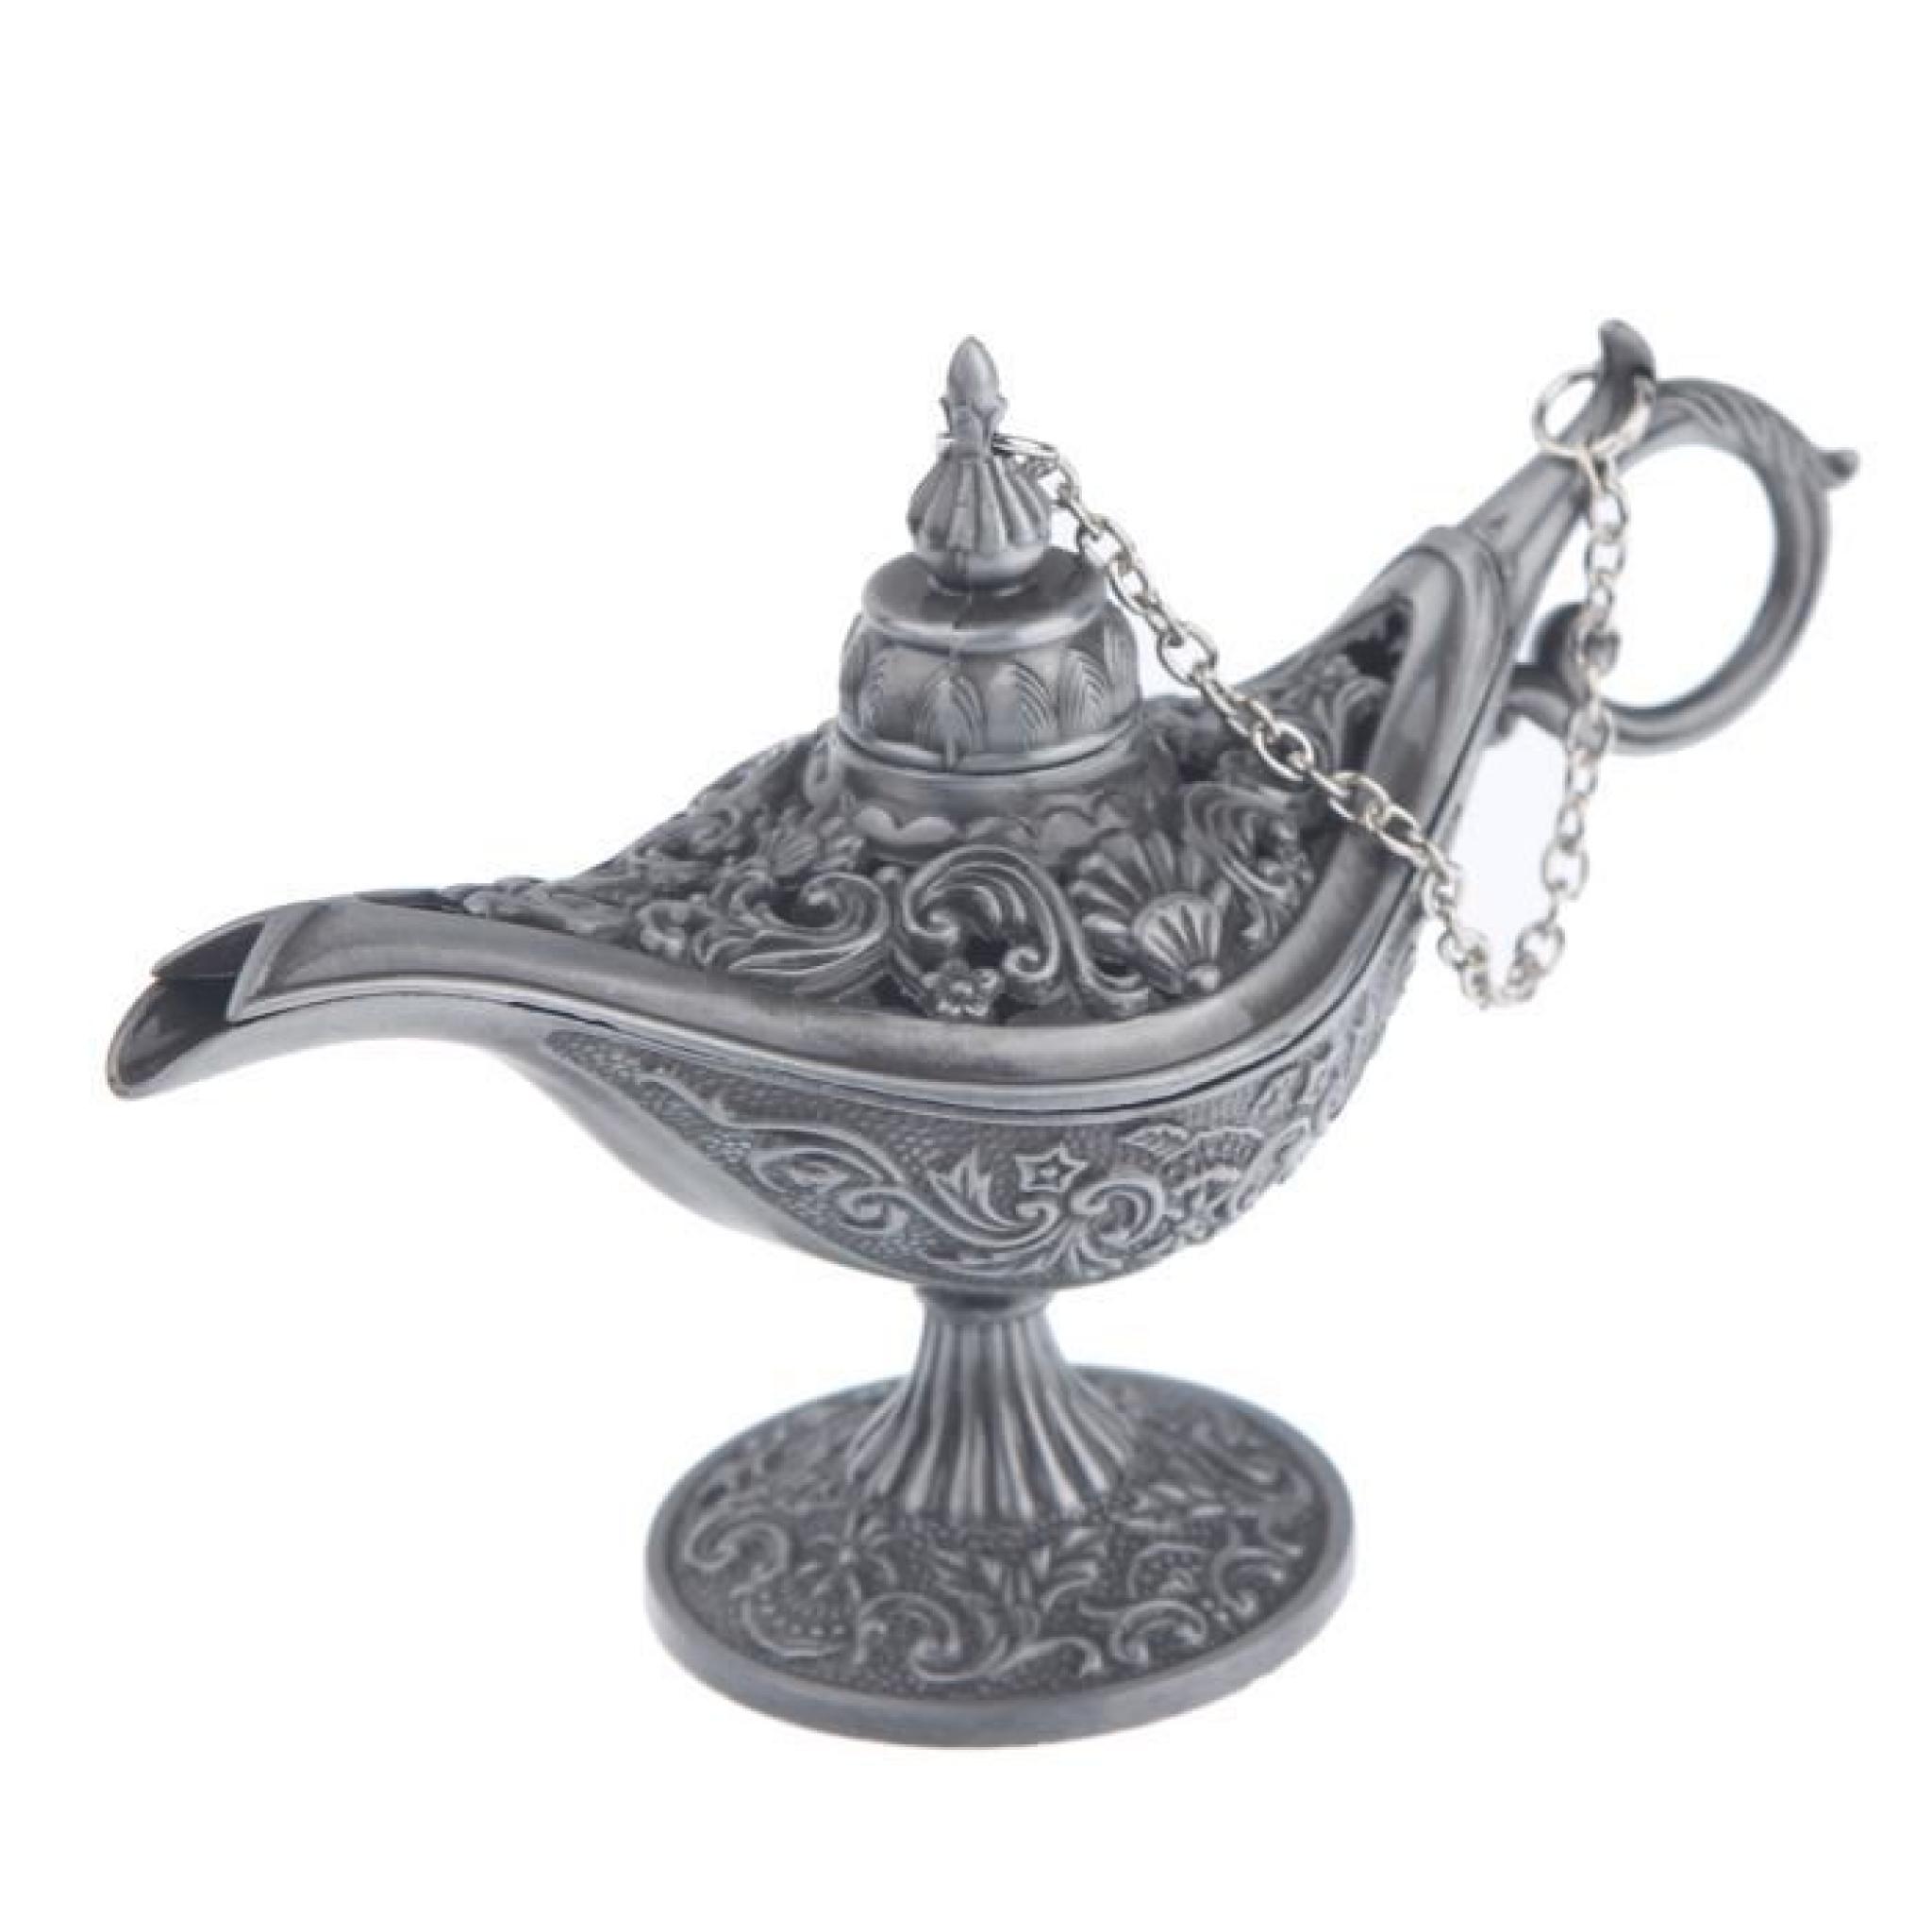 Lampe d'Aladdin Collection du Tibet Aladdin Genie vintage rétro classique ornements décoration WFR